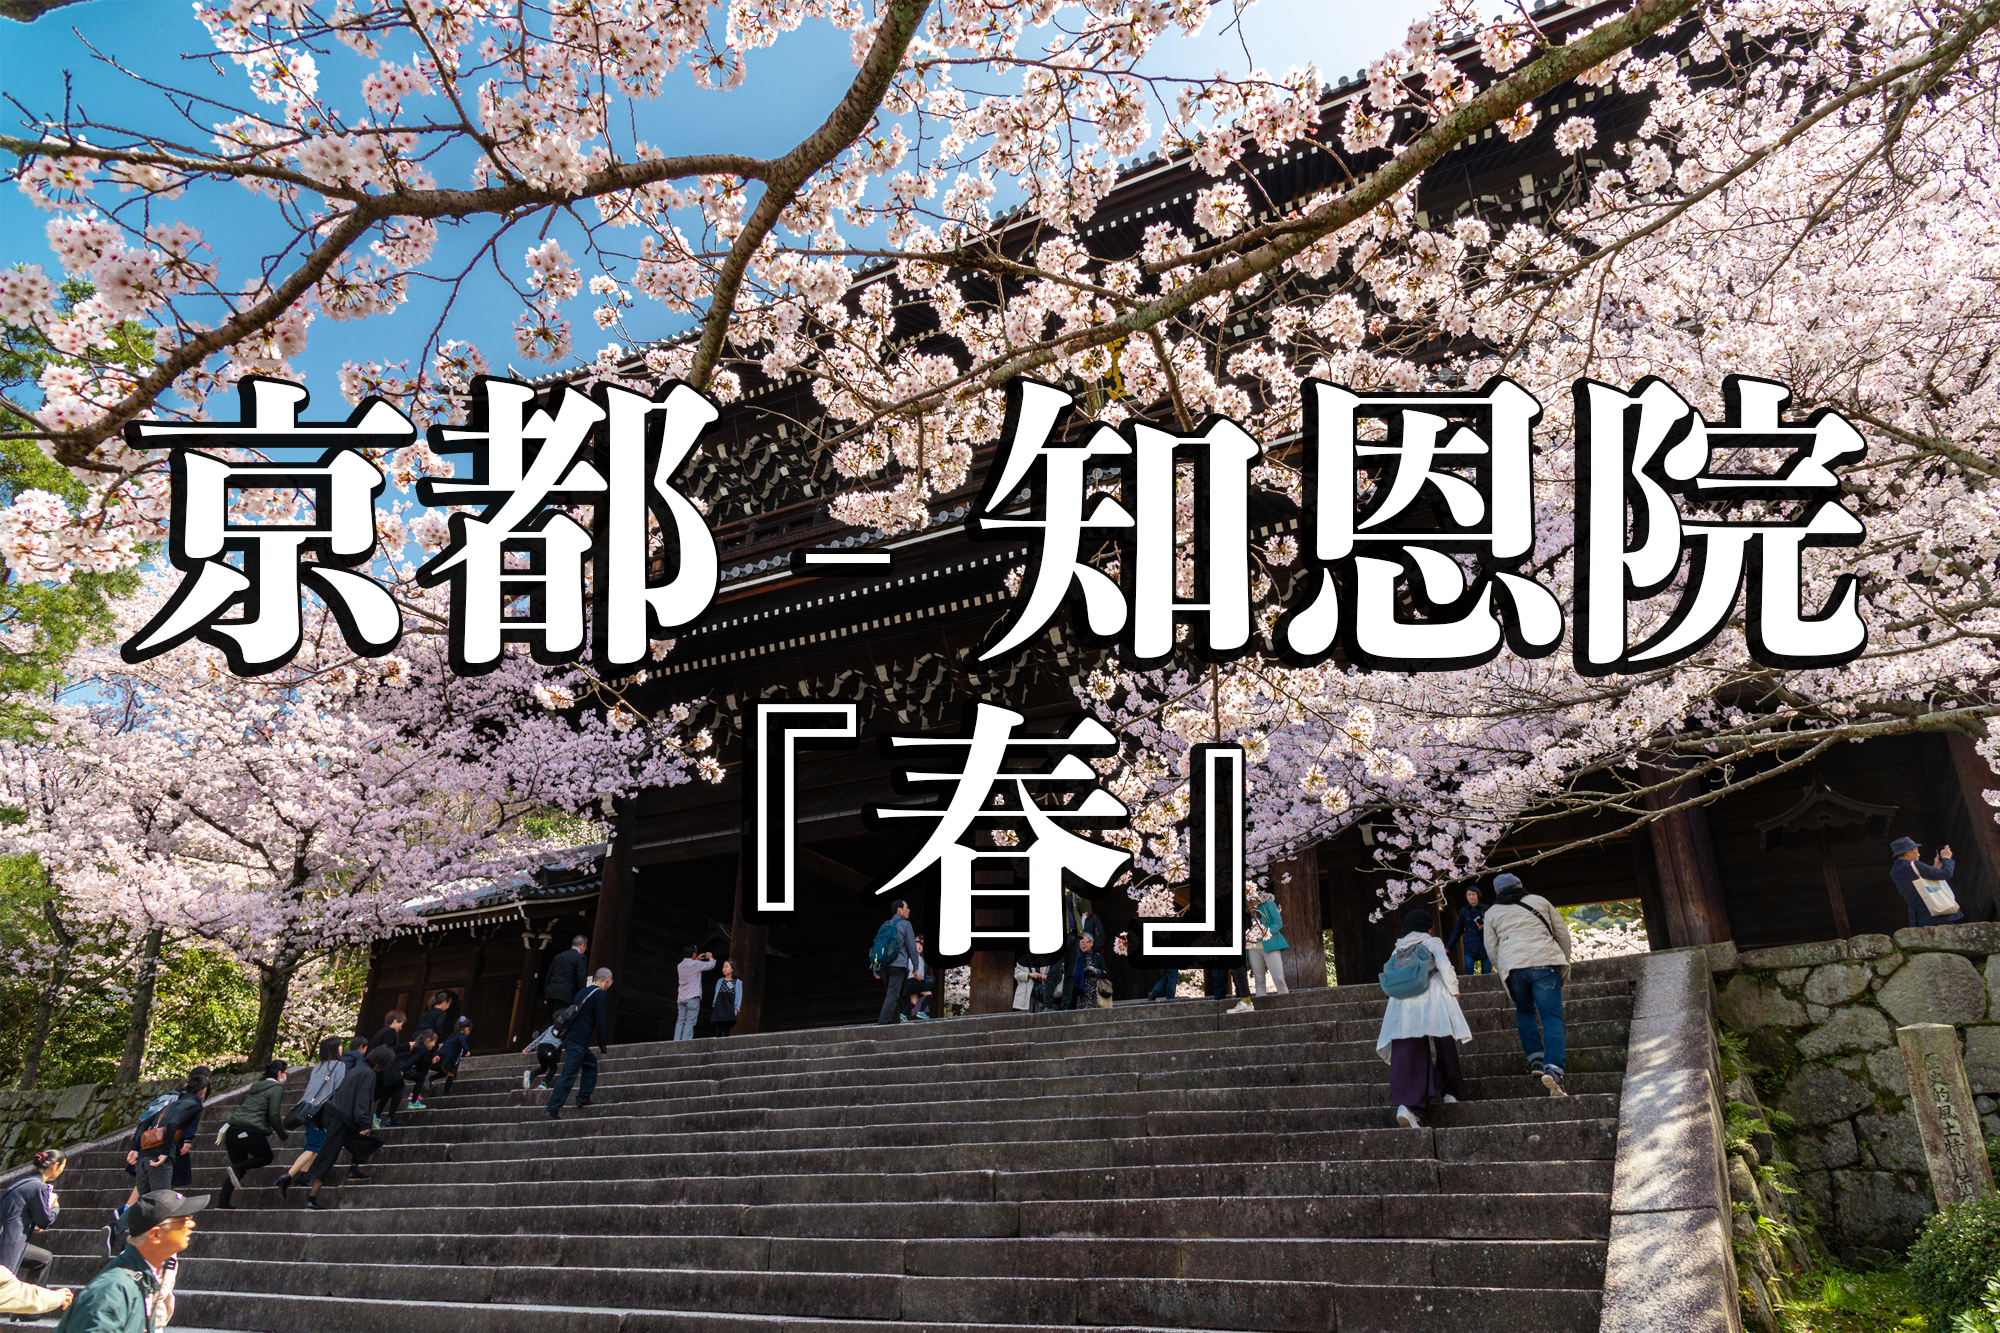 京都府 知恩院 三門の美しい桜景色 京都で春におすすめの写真スポット 写真の紹介 アクセス情報など 写真や映像で紹介する関西 近畿の絶景カメラ 観光スポット